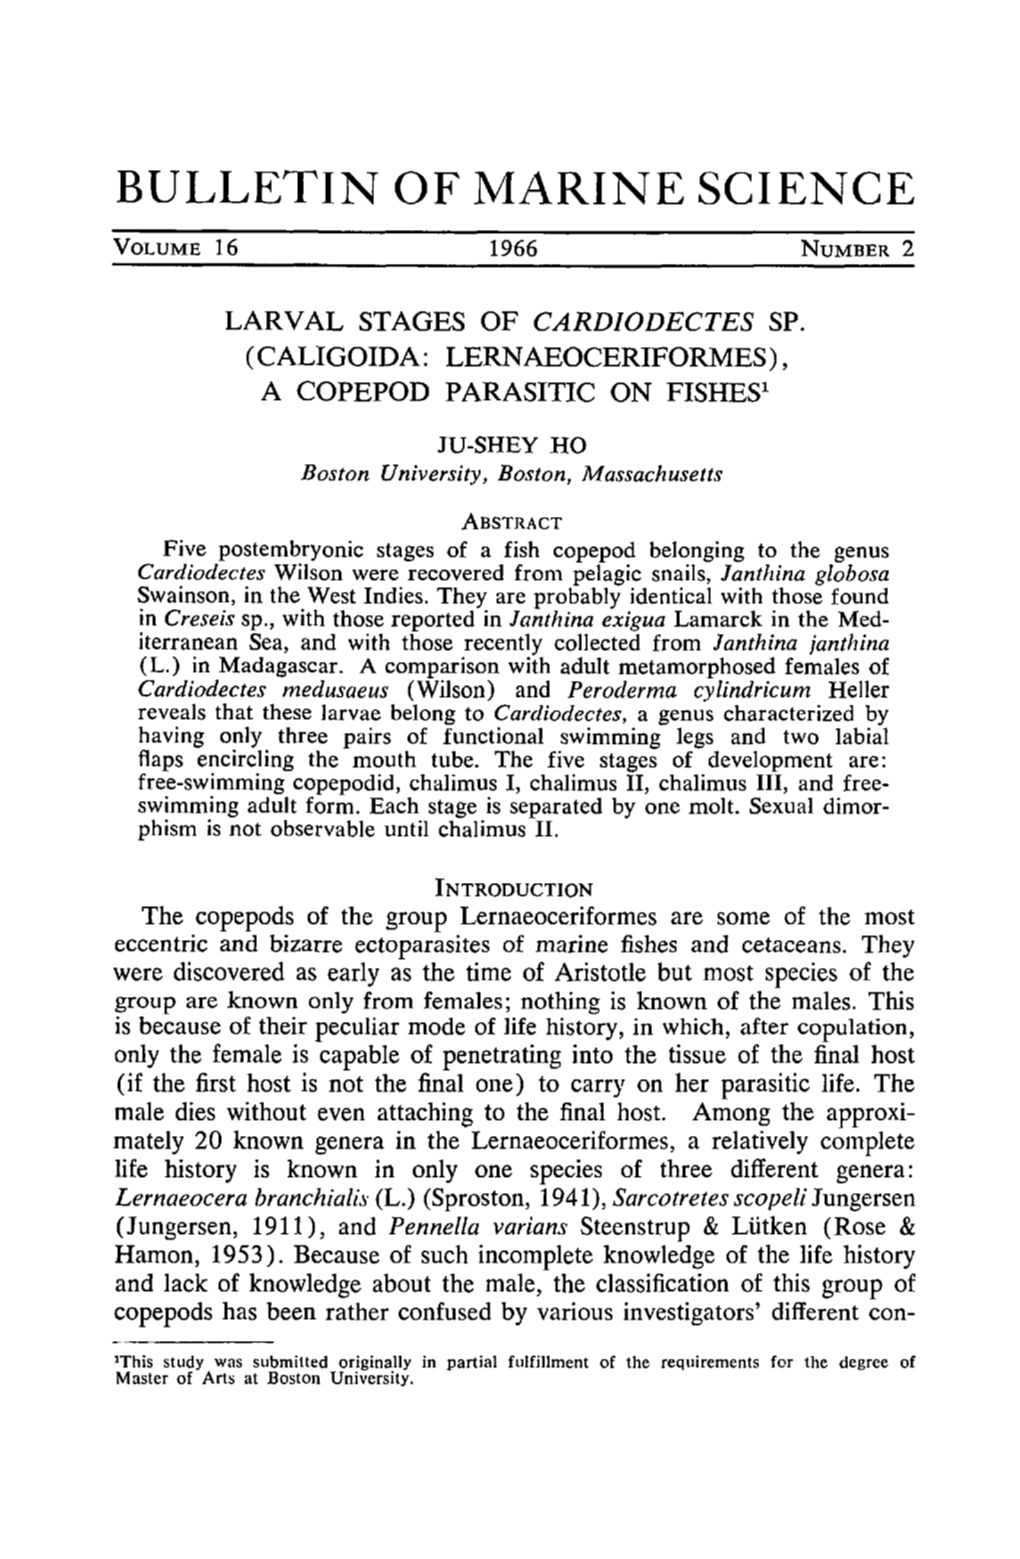 Larval Stages of &lt;I&gt;Cardiodectes&lt;/I&gt; Sp. (Caligoida: Lernaeoceriformes